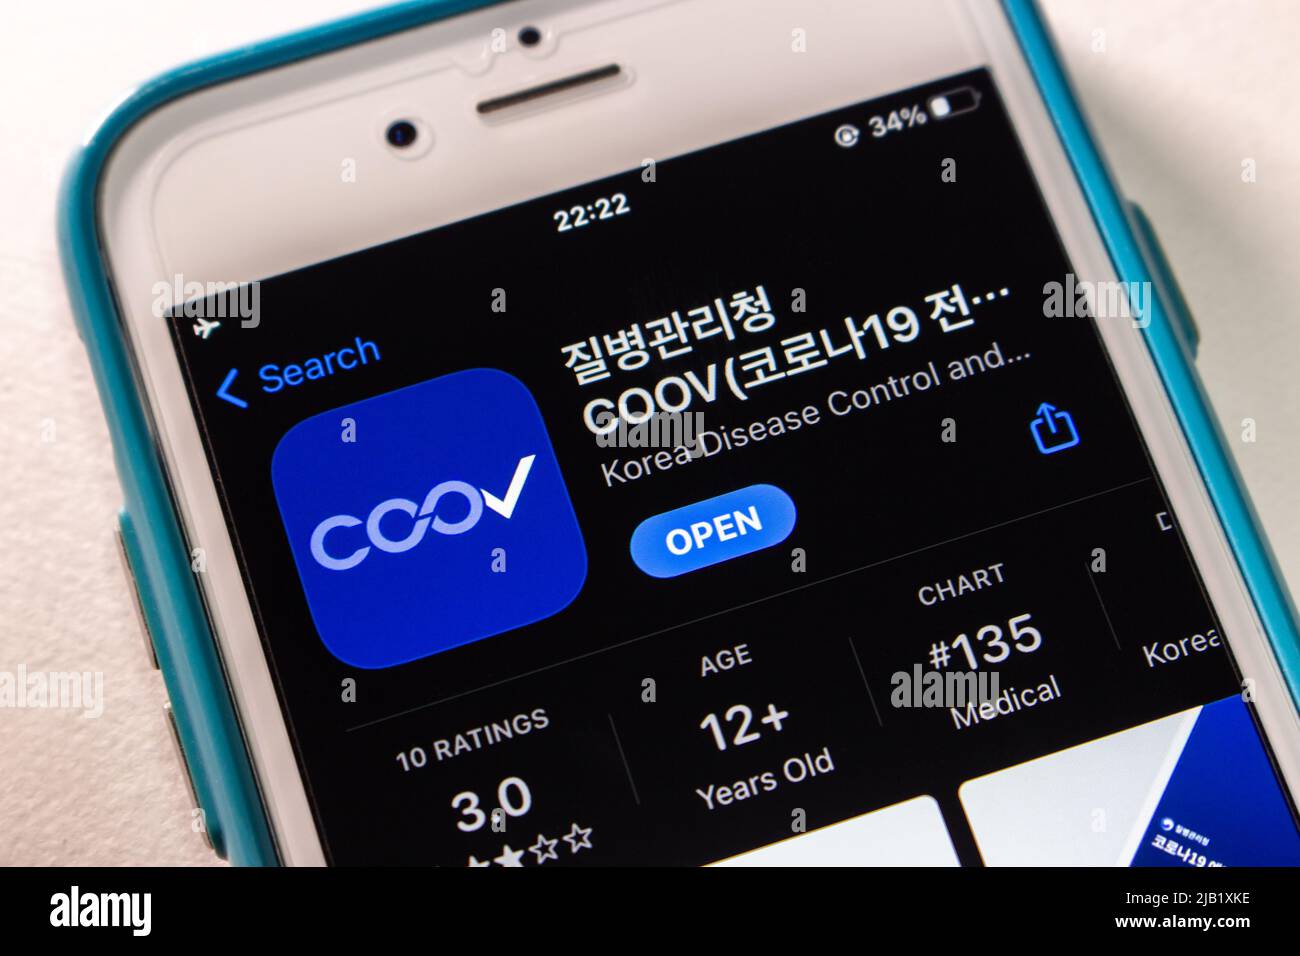 Logo di COOV (Corona superate), il servizio di certificazione di vaccinazione Covid-19 basato su blockchain da parte del governo sudcoreano, in App Store su iPhone. Foto Stock